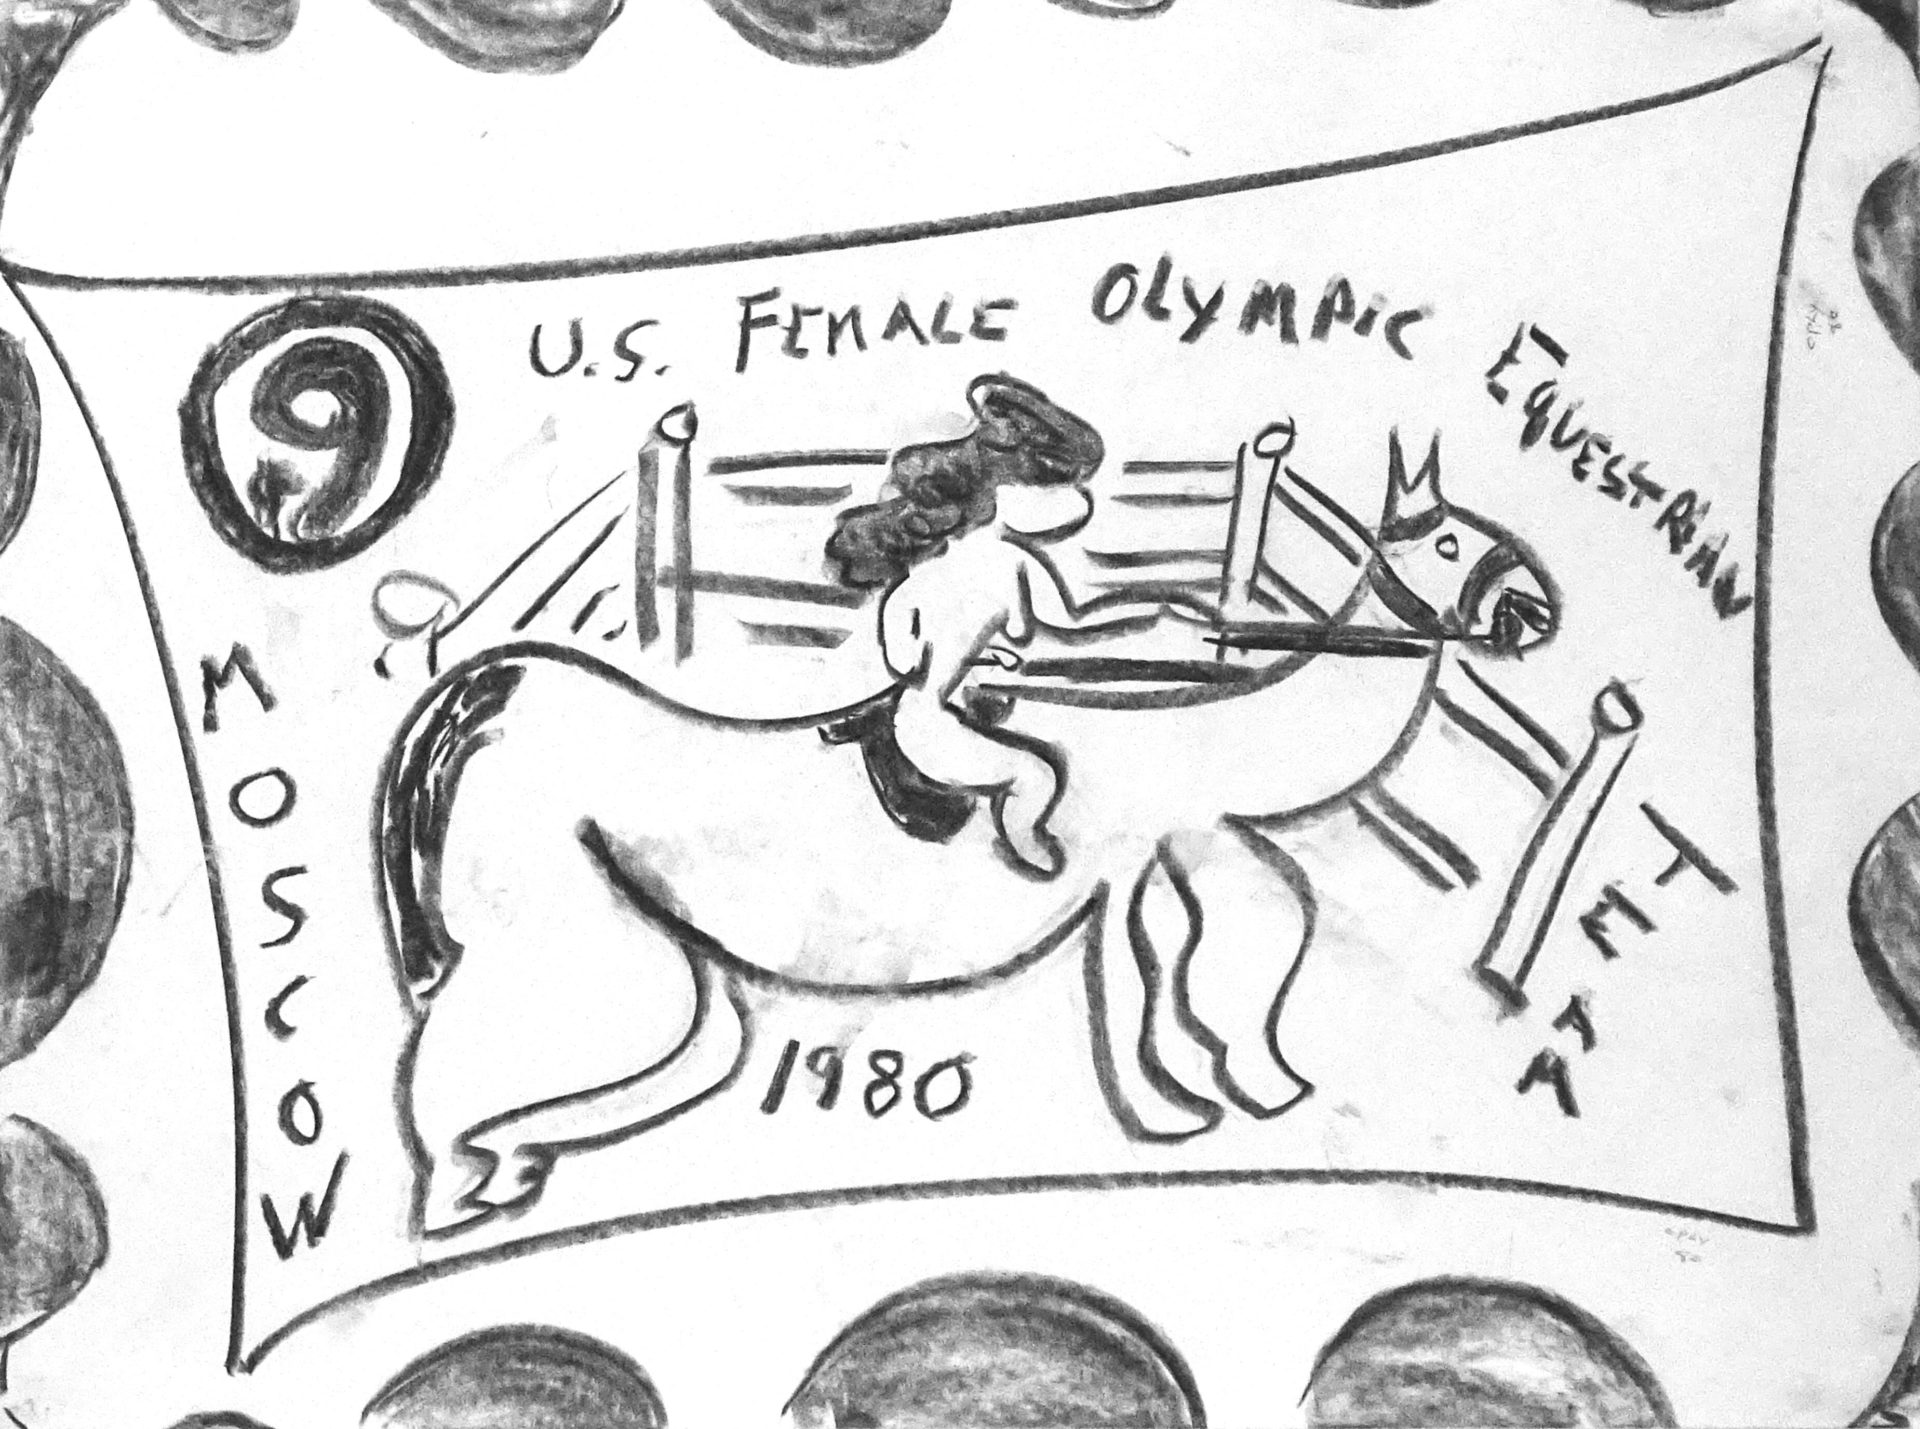 U.S. Female Olympic Equestrian Team, Moscow